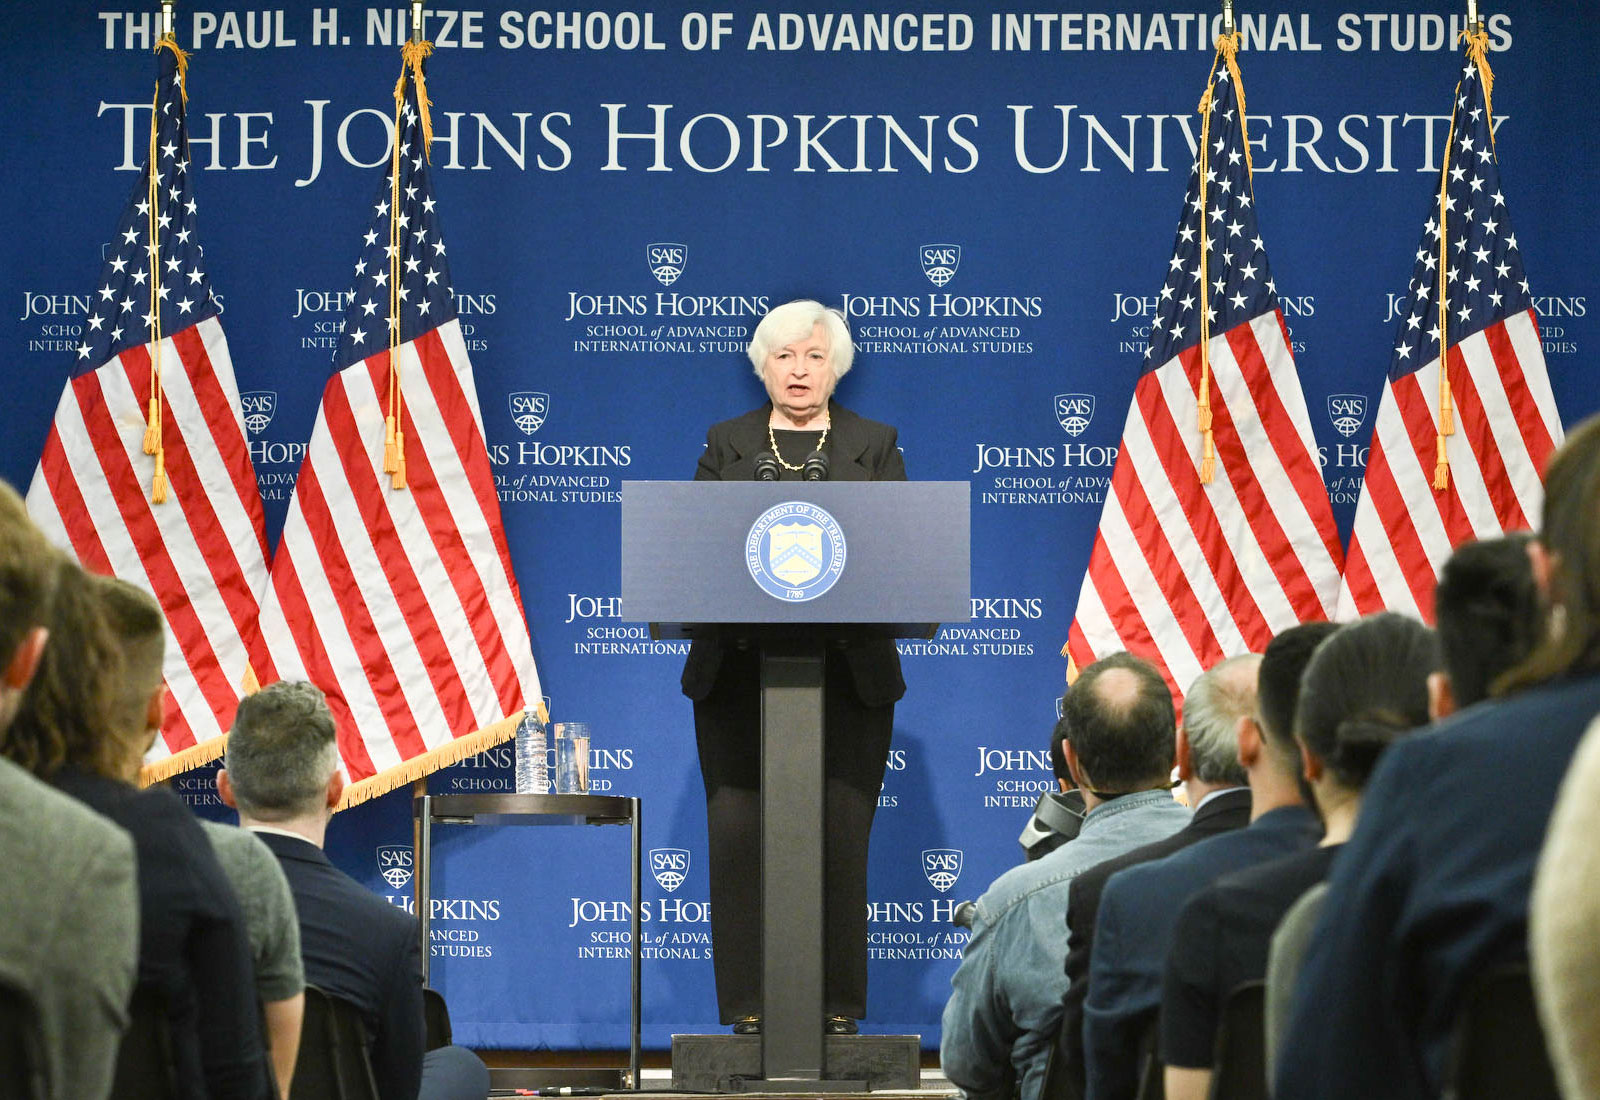 Yellen speaking at SAIS